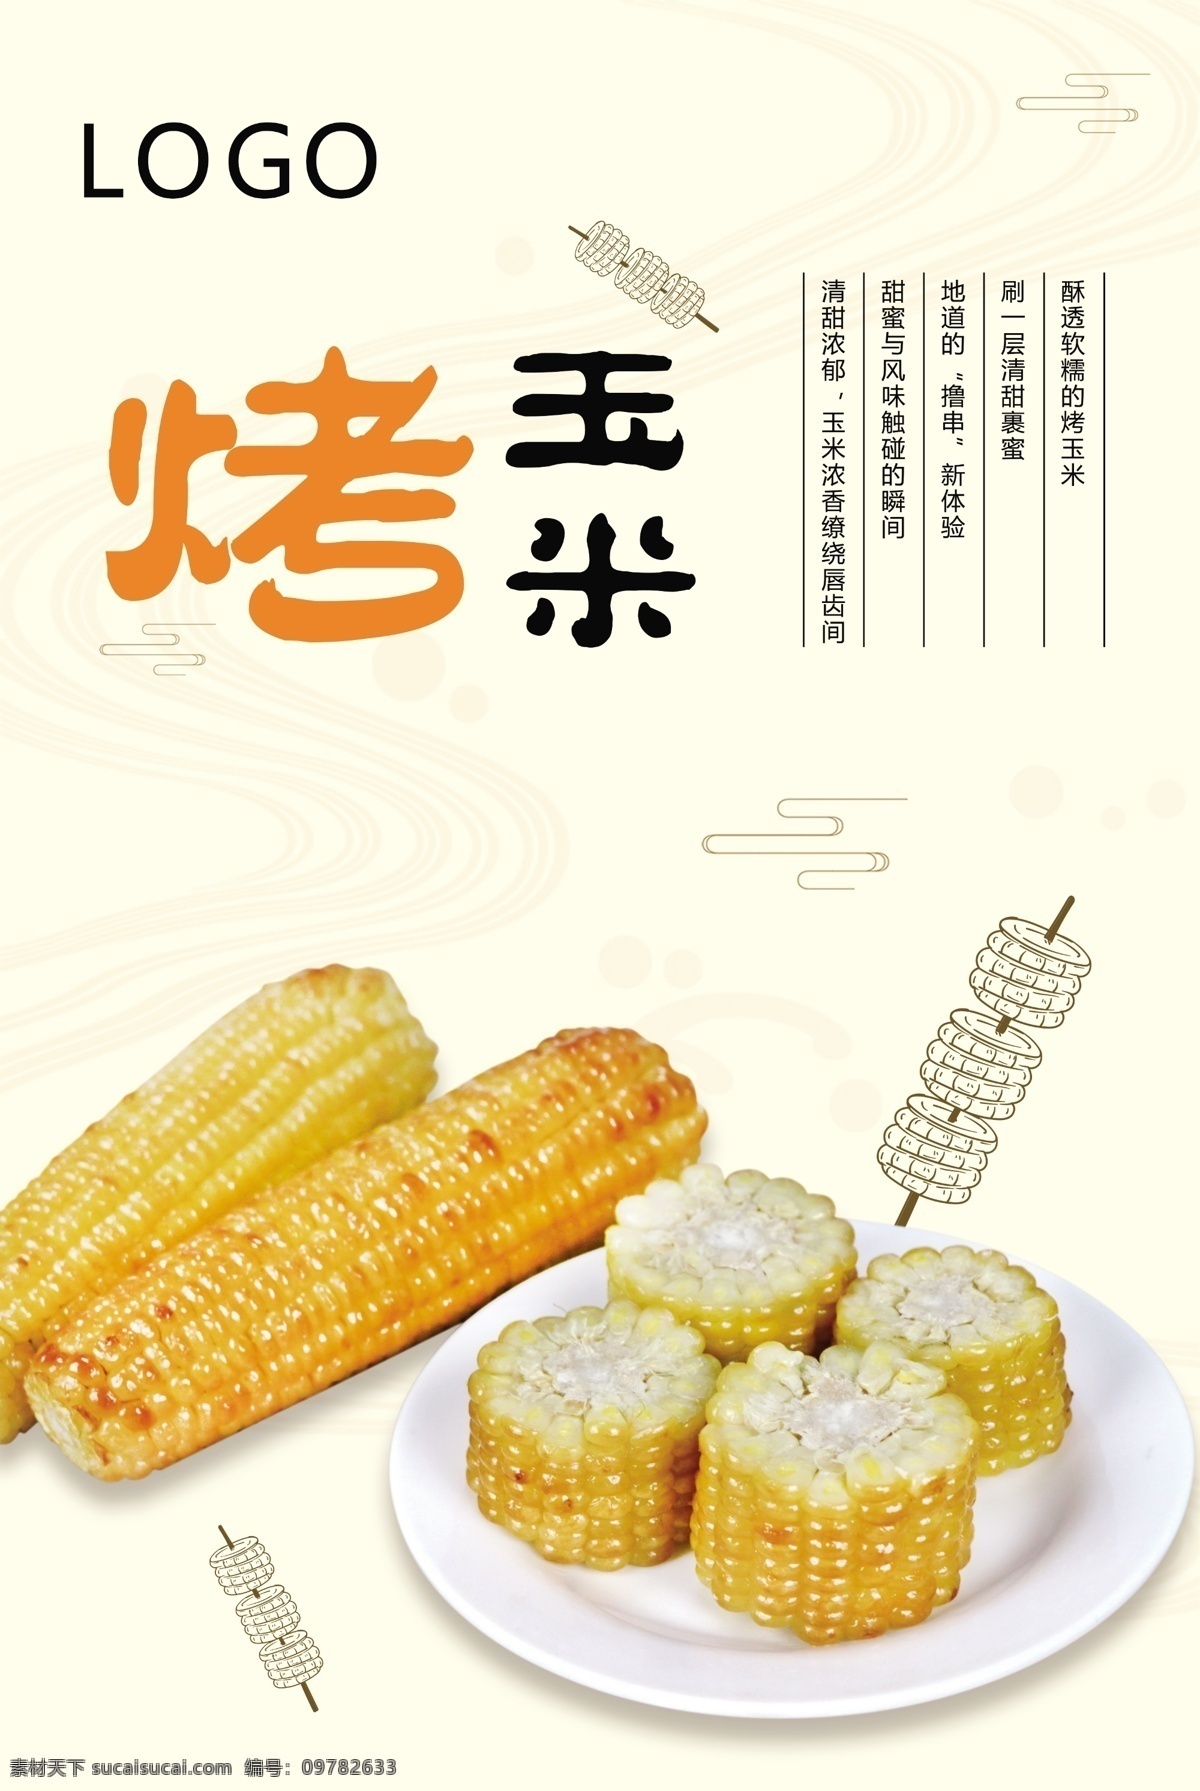 烤玉米海报 玉米 象形图玉米 盘子 切开玉米 成段玉米 烤玉米 底纹 可印刷 大尺寸